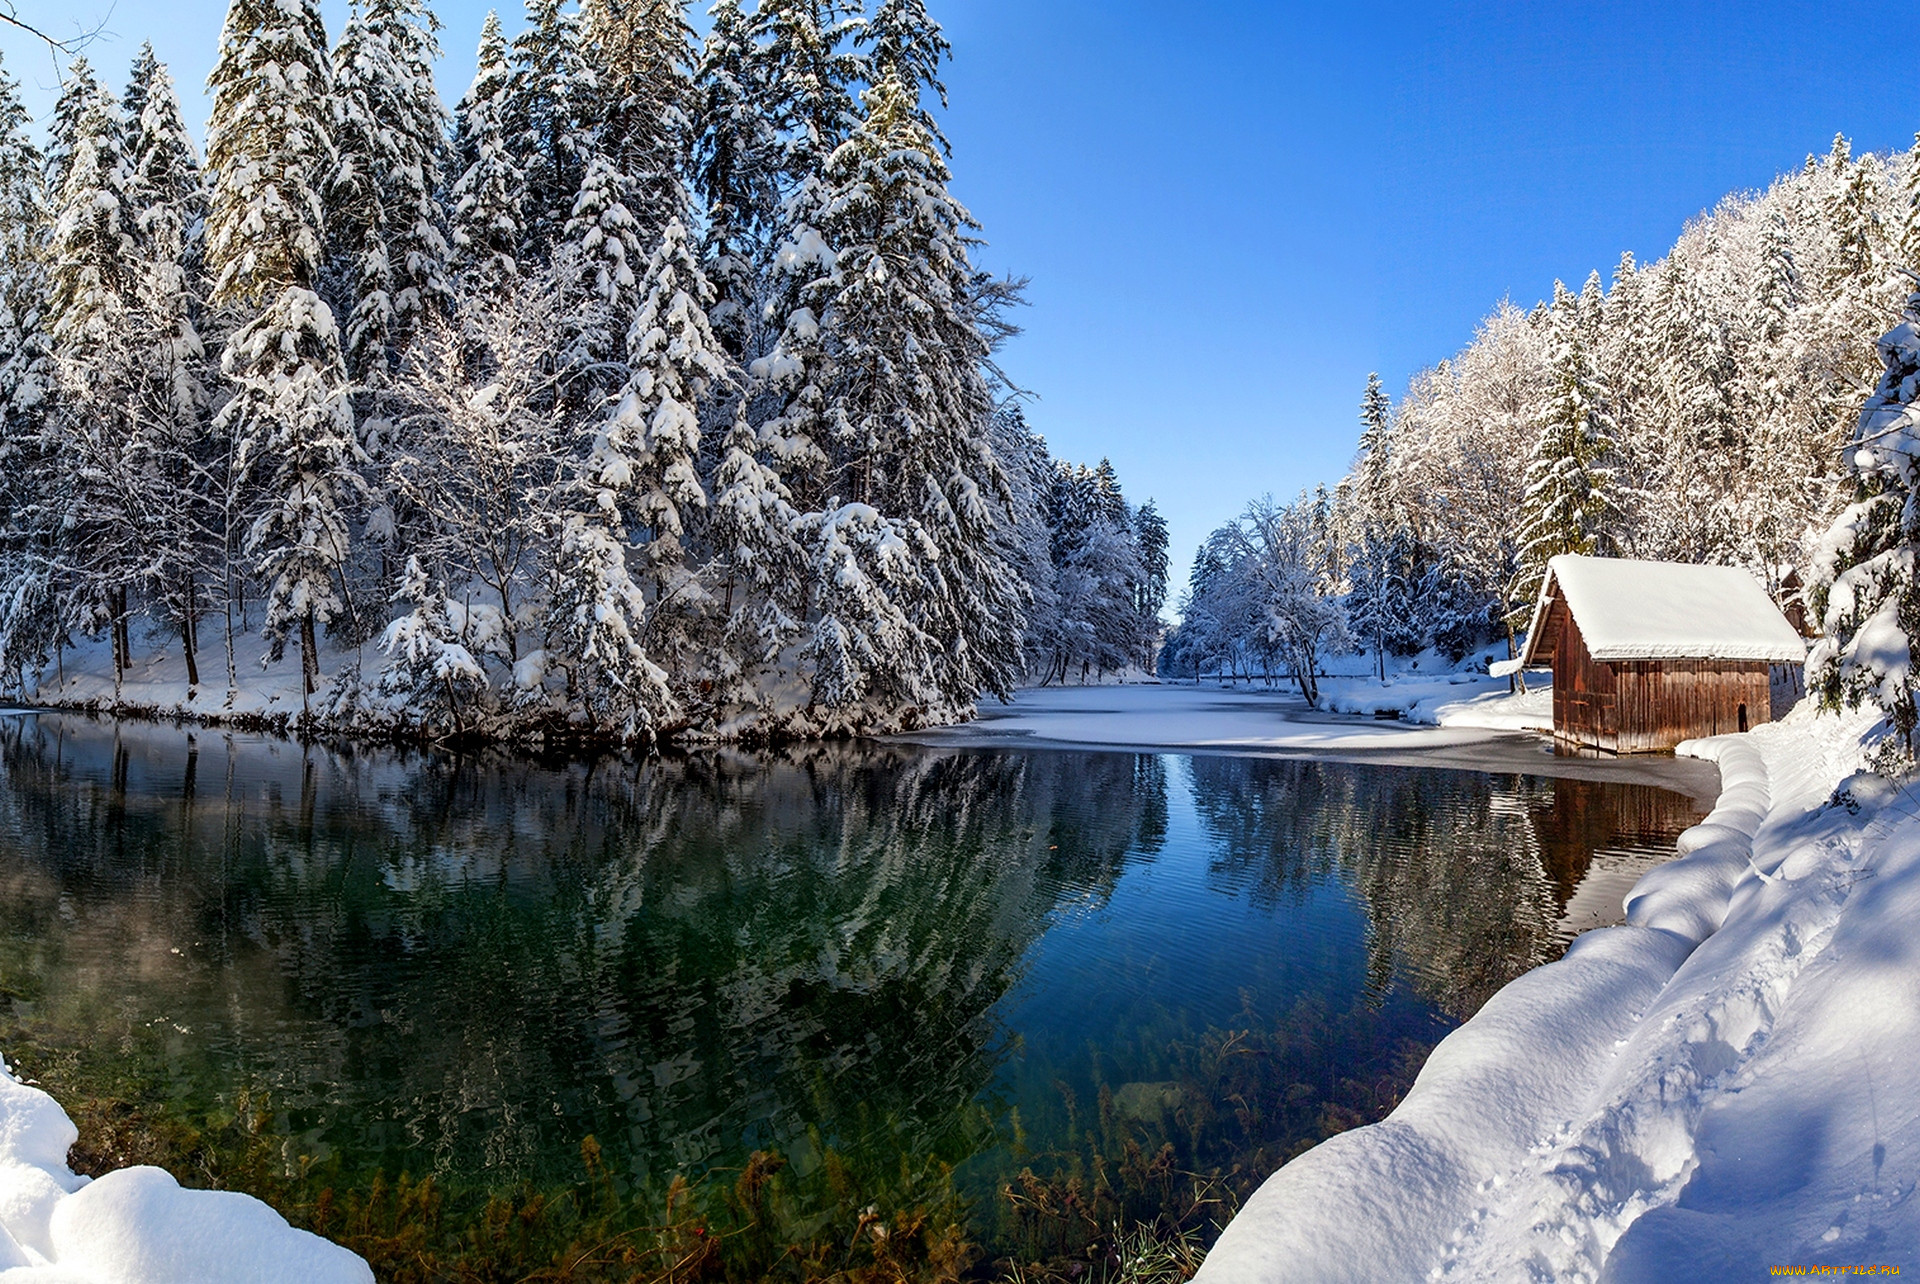 Фото по картинке. Зимний пейзаж. Зимняя природа. Красивая зима. Красота зимы.